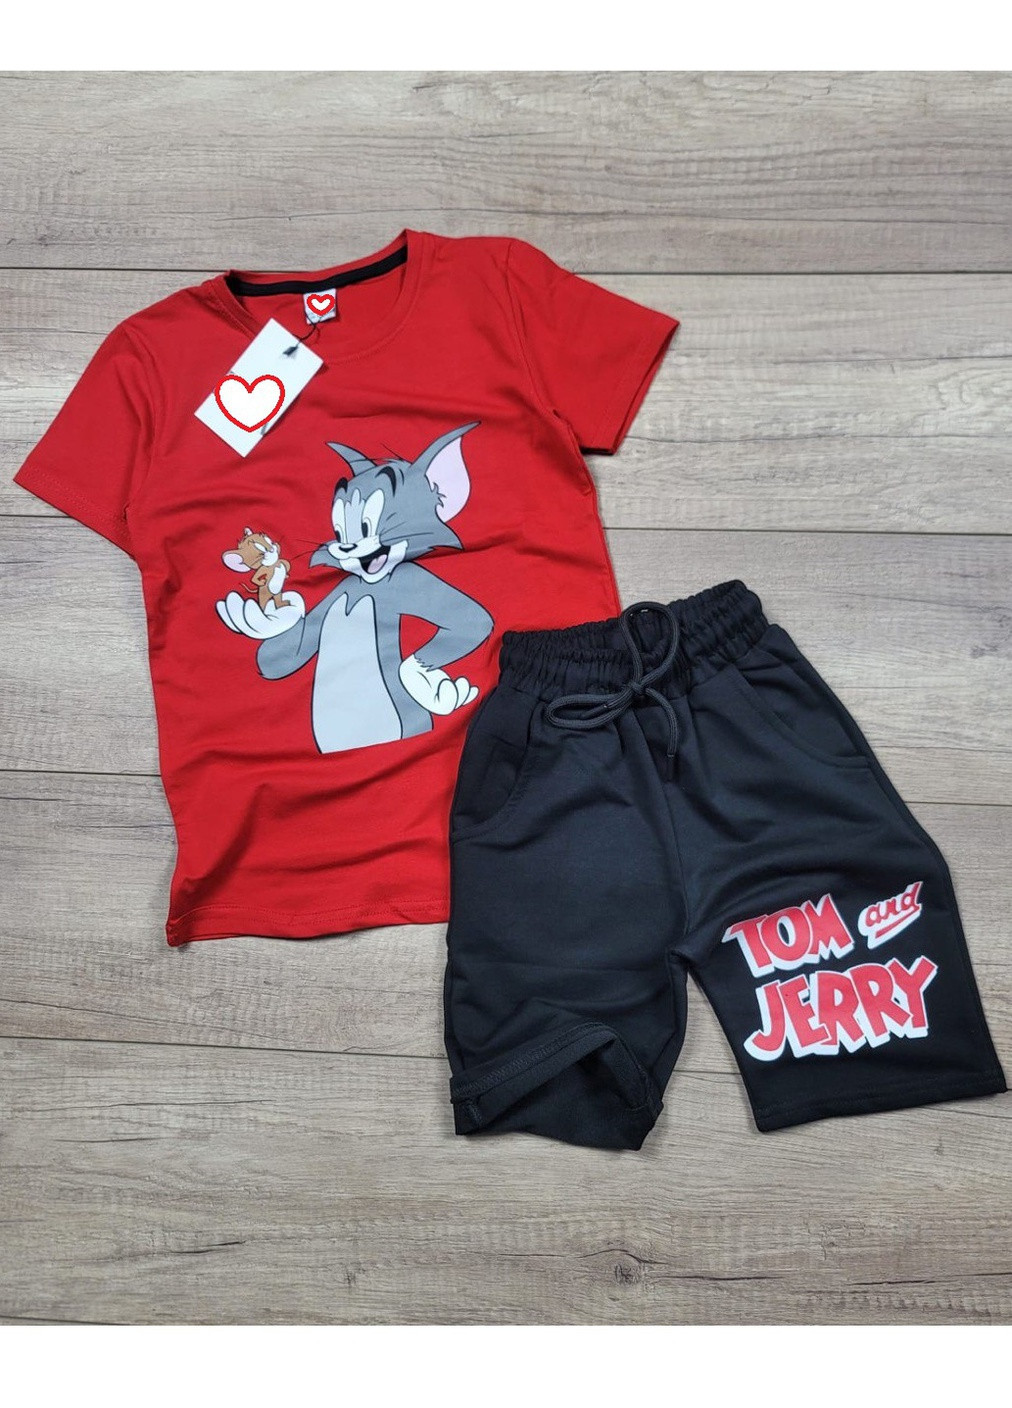 Червоний літній костюм легкий (футболка, шорти) том и джеррі (tom and jerry) Disney